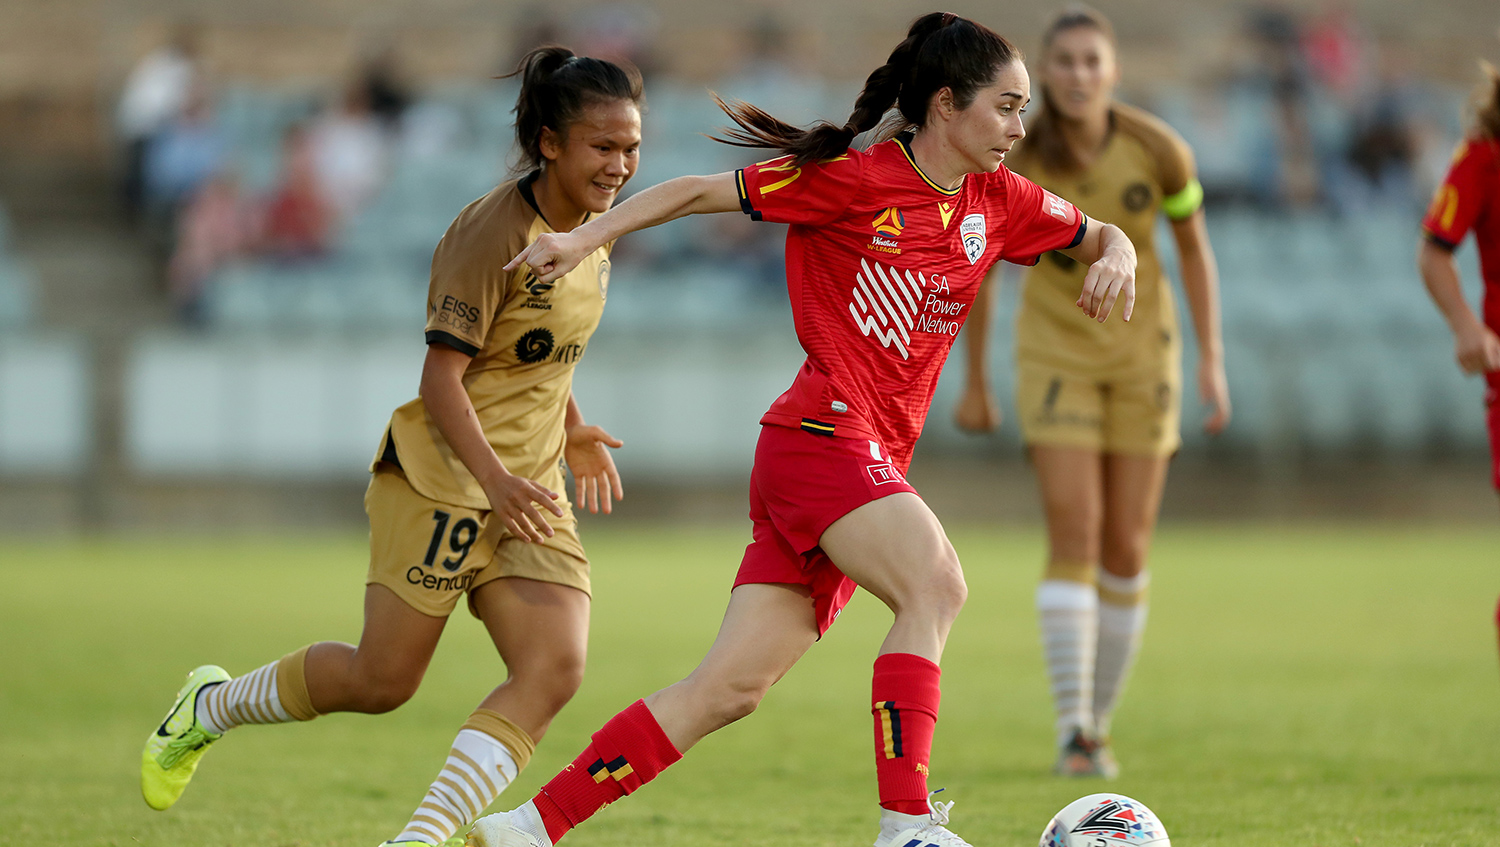 Laura Johns vs Western Sydney Wanderers Women Round 11 Westfield W-League 2019/20